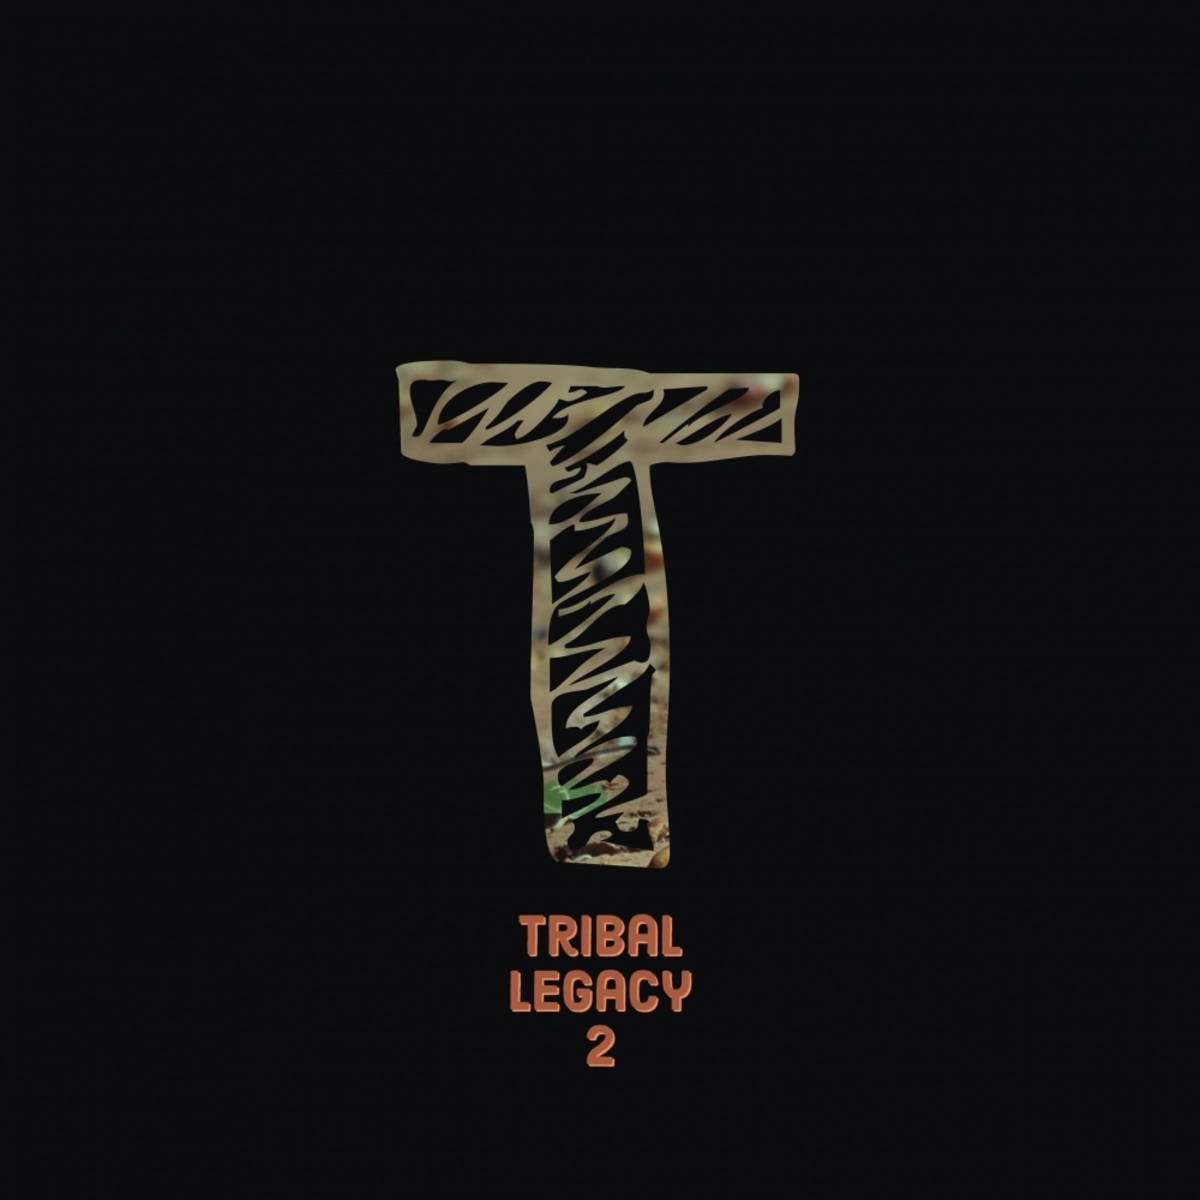 VA - Tribal Legacy 2 / MyCrazyClub